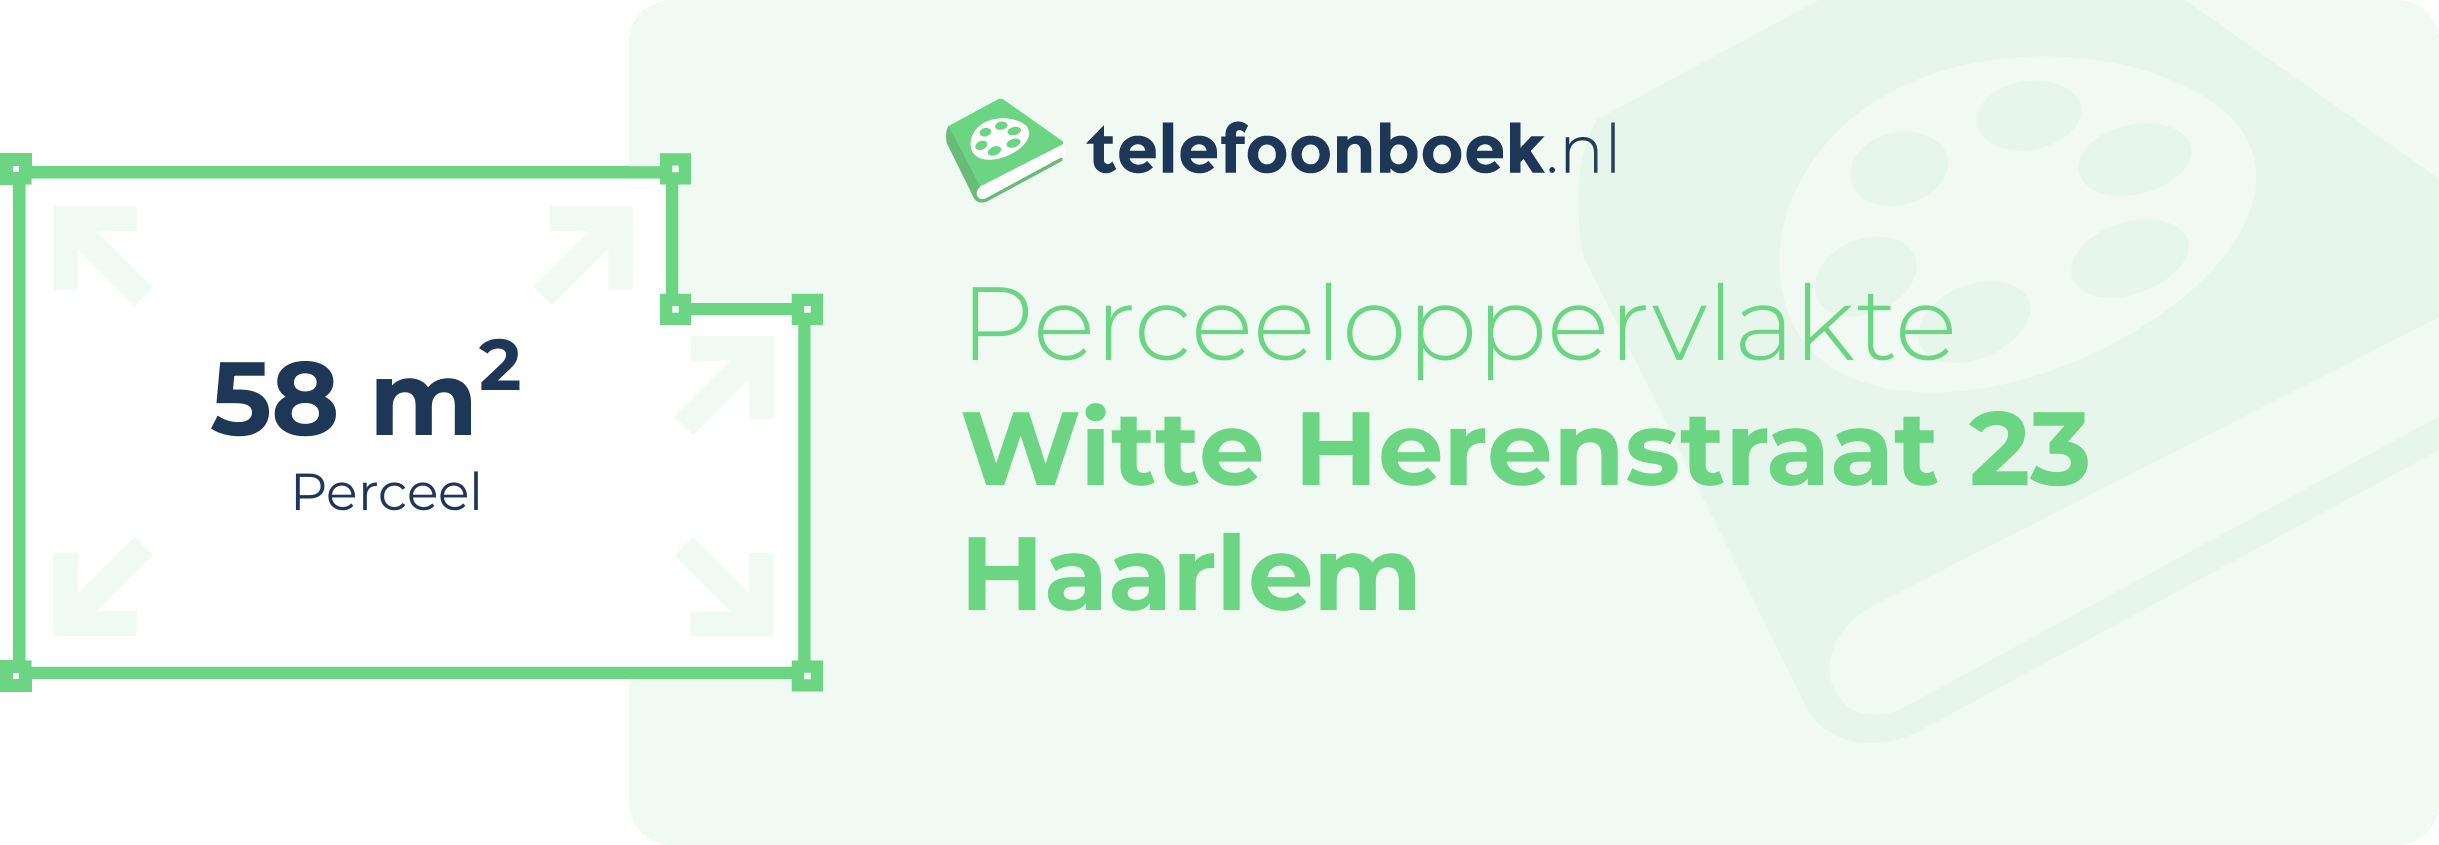 Perceeloppervlakte Witte Herenstraat 23 Haarlem